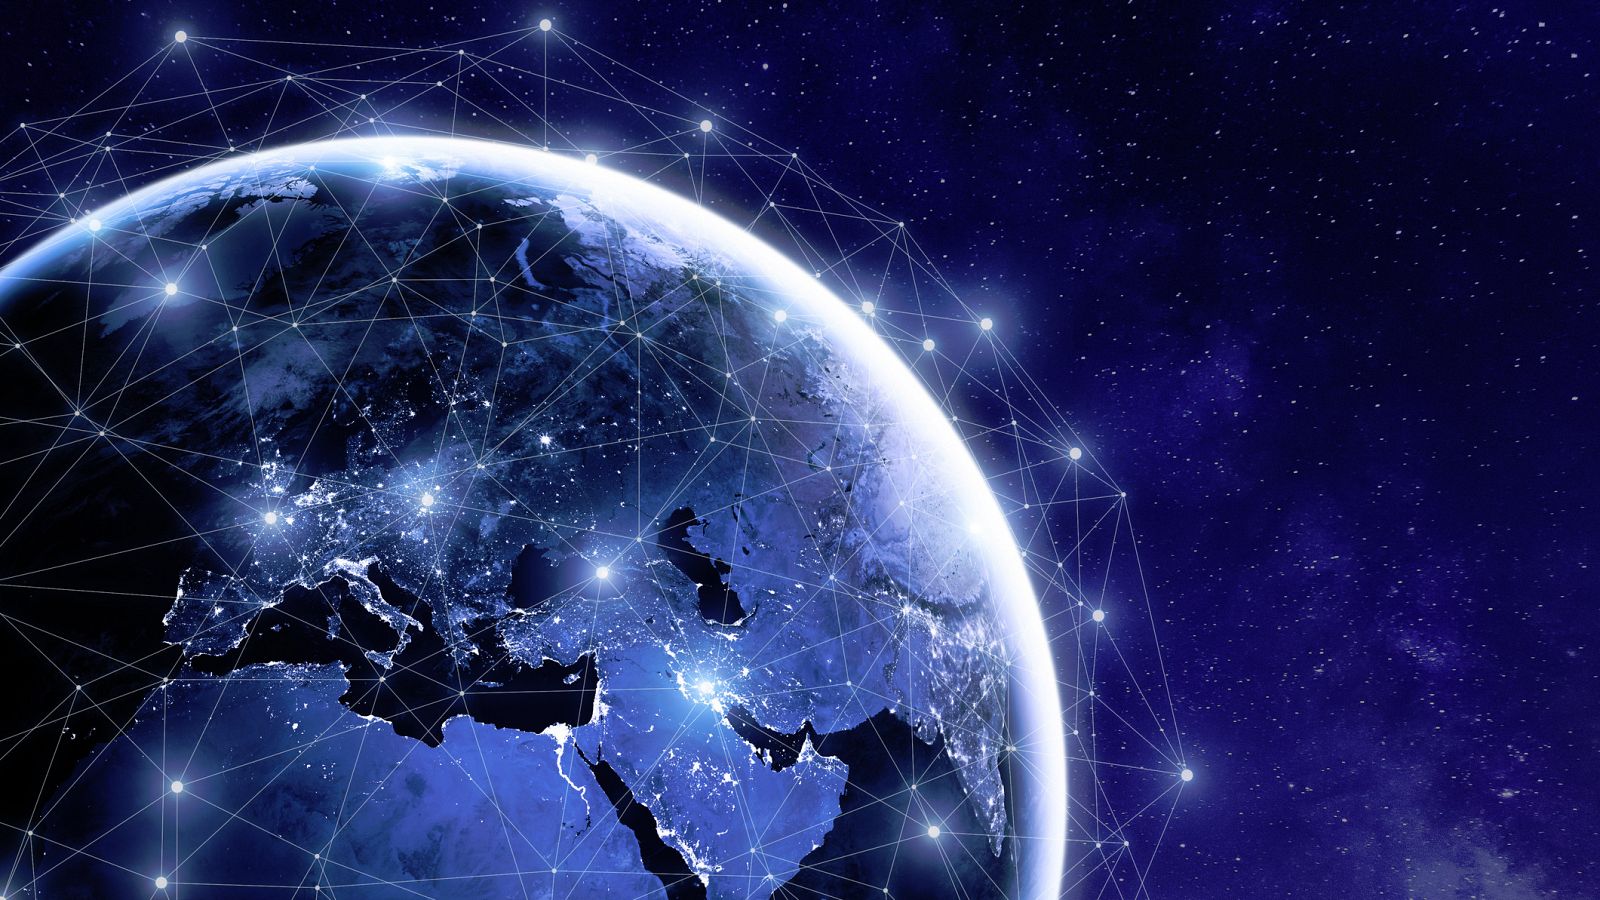 La red Starlink prevé proporcionar internet de alta velocidad a usuarios de cualquier lugar del mundo.